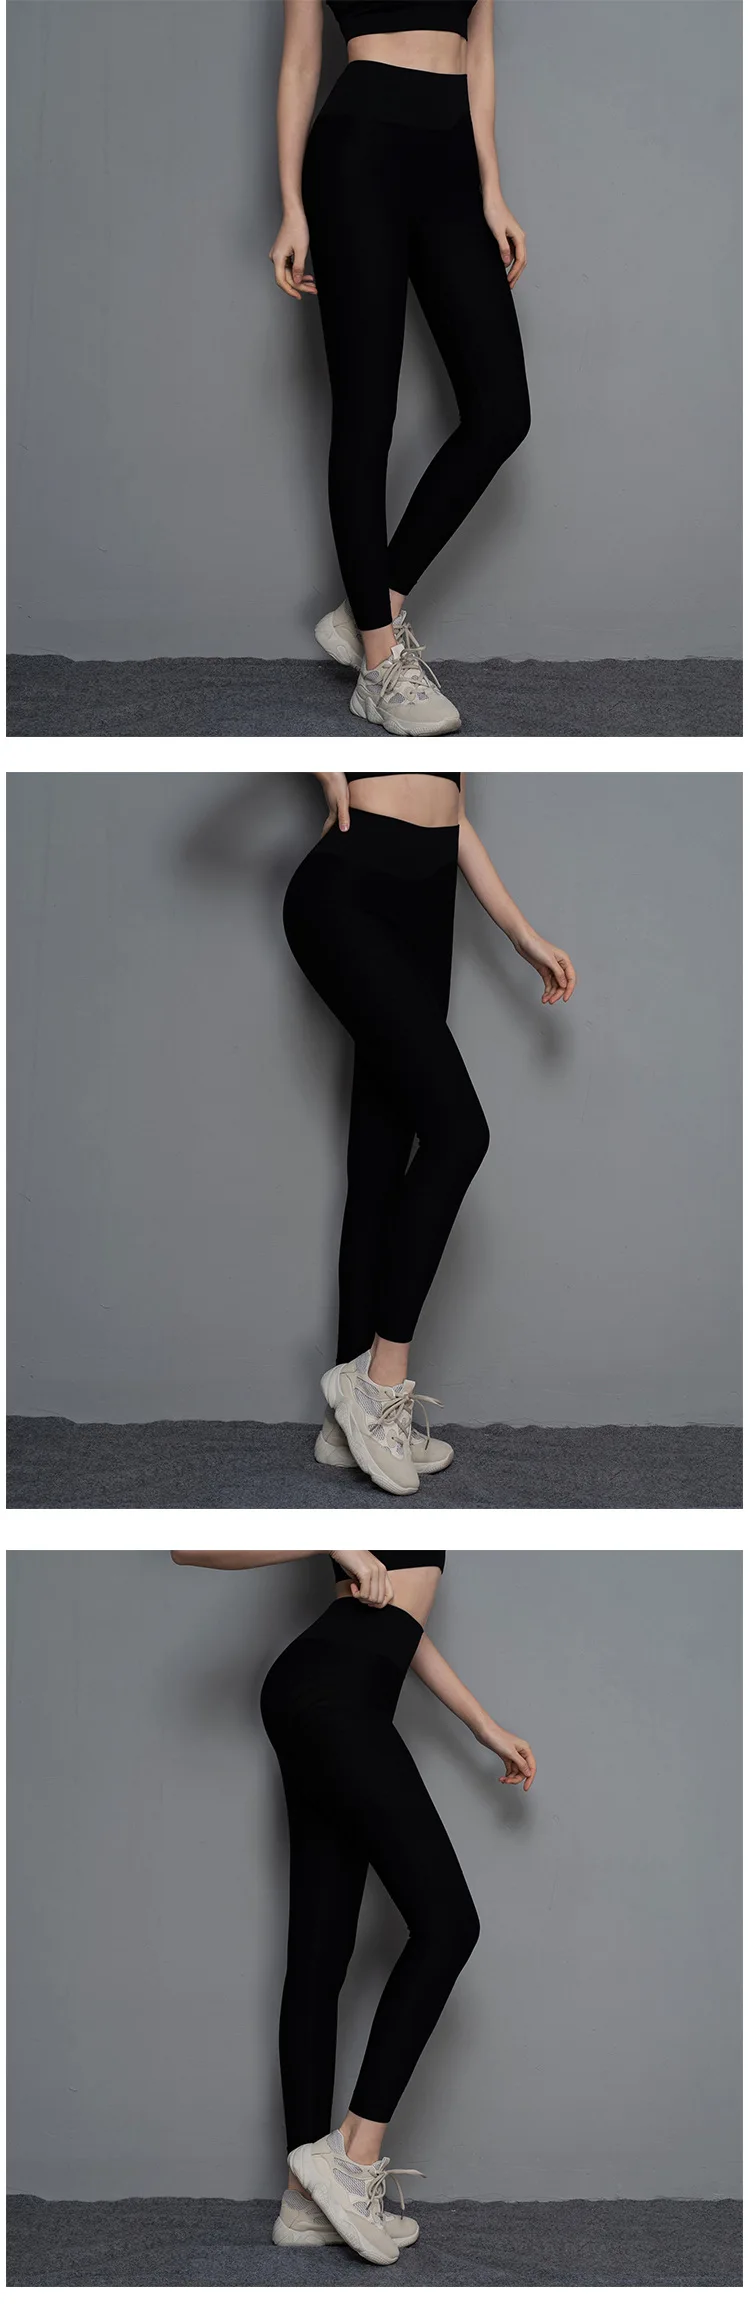 HTLD эластичные полосатые леггинсы для тренировок фитнес Feminina леггинсы с высокой талией mujer спортивные штаны быстросохнущие брюки для бега Pantalon femme